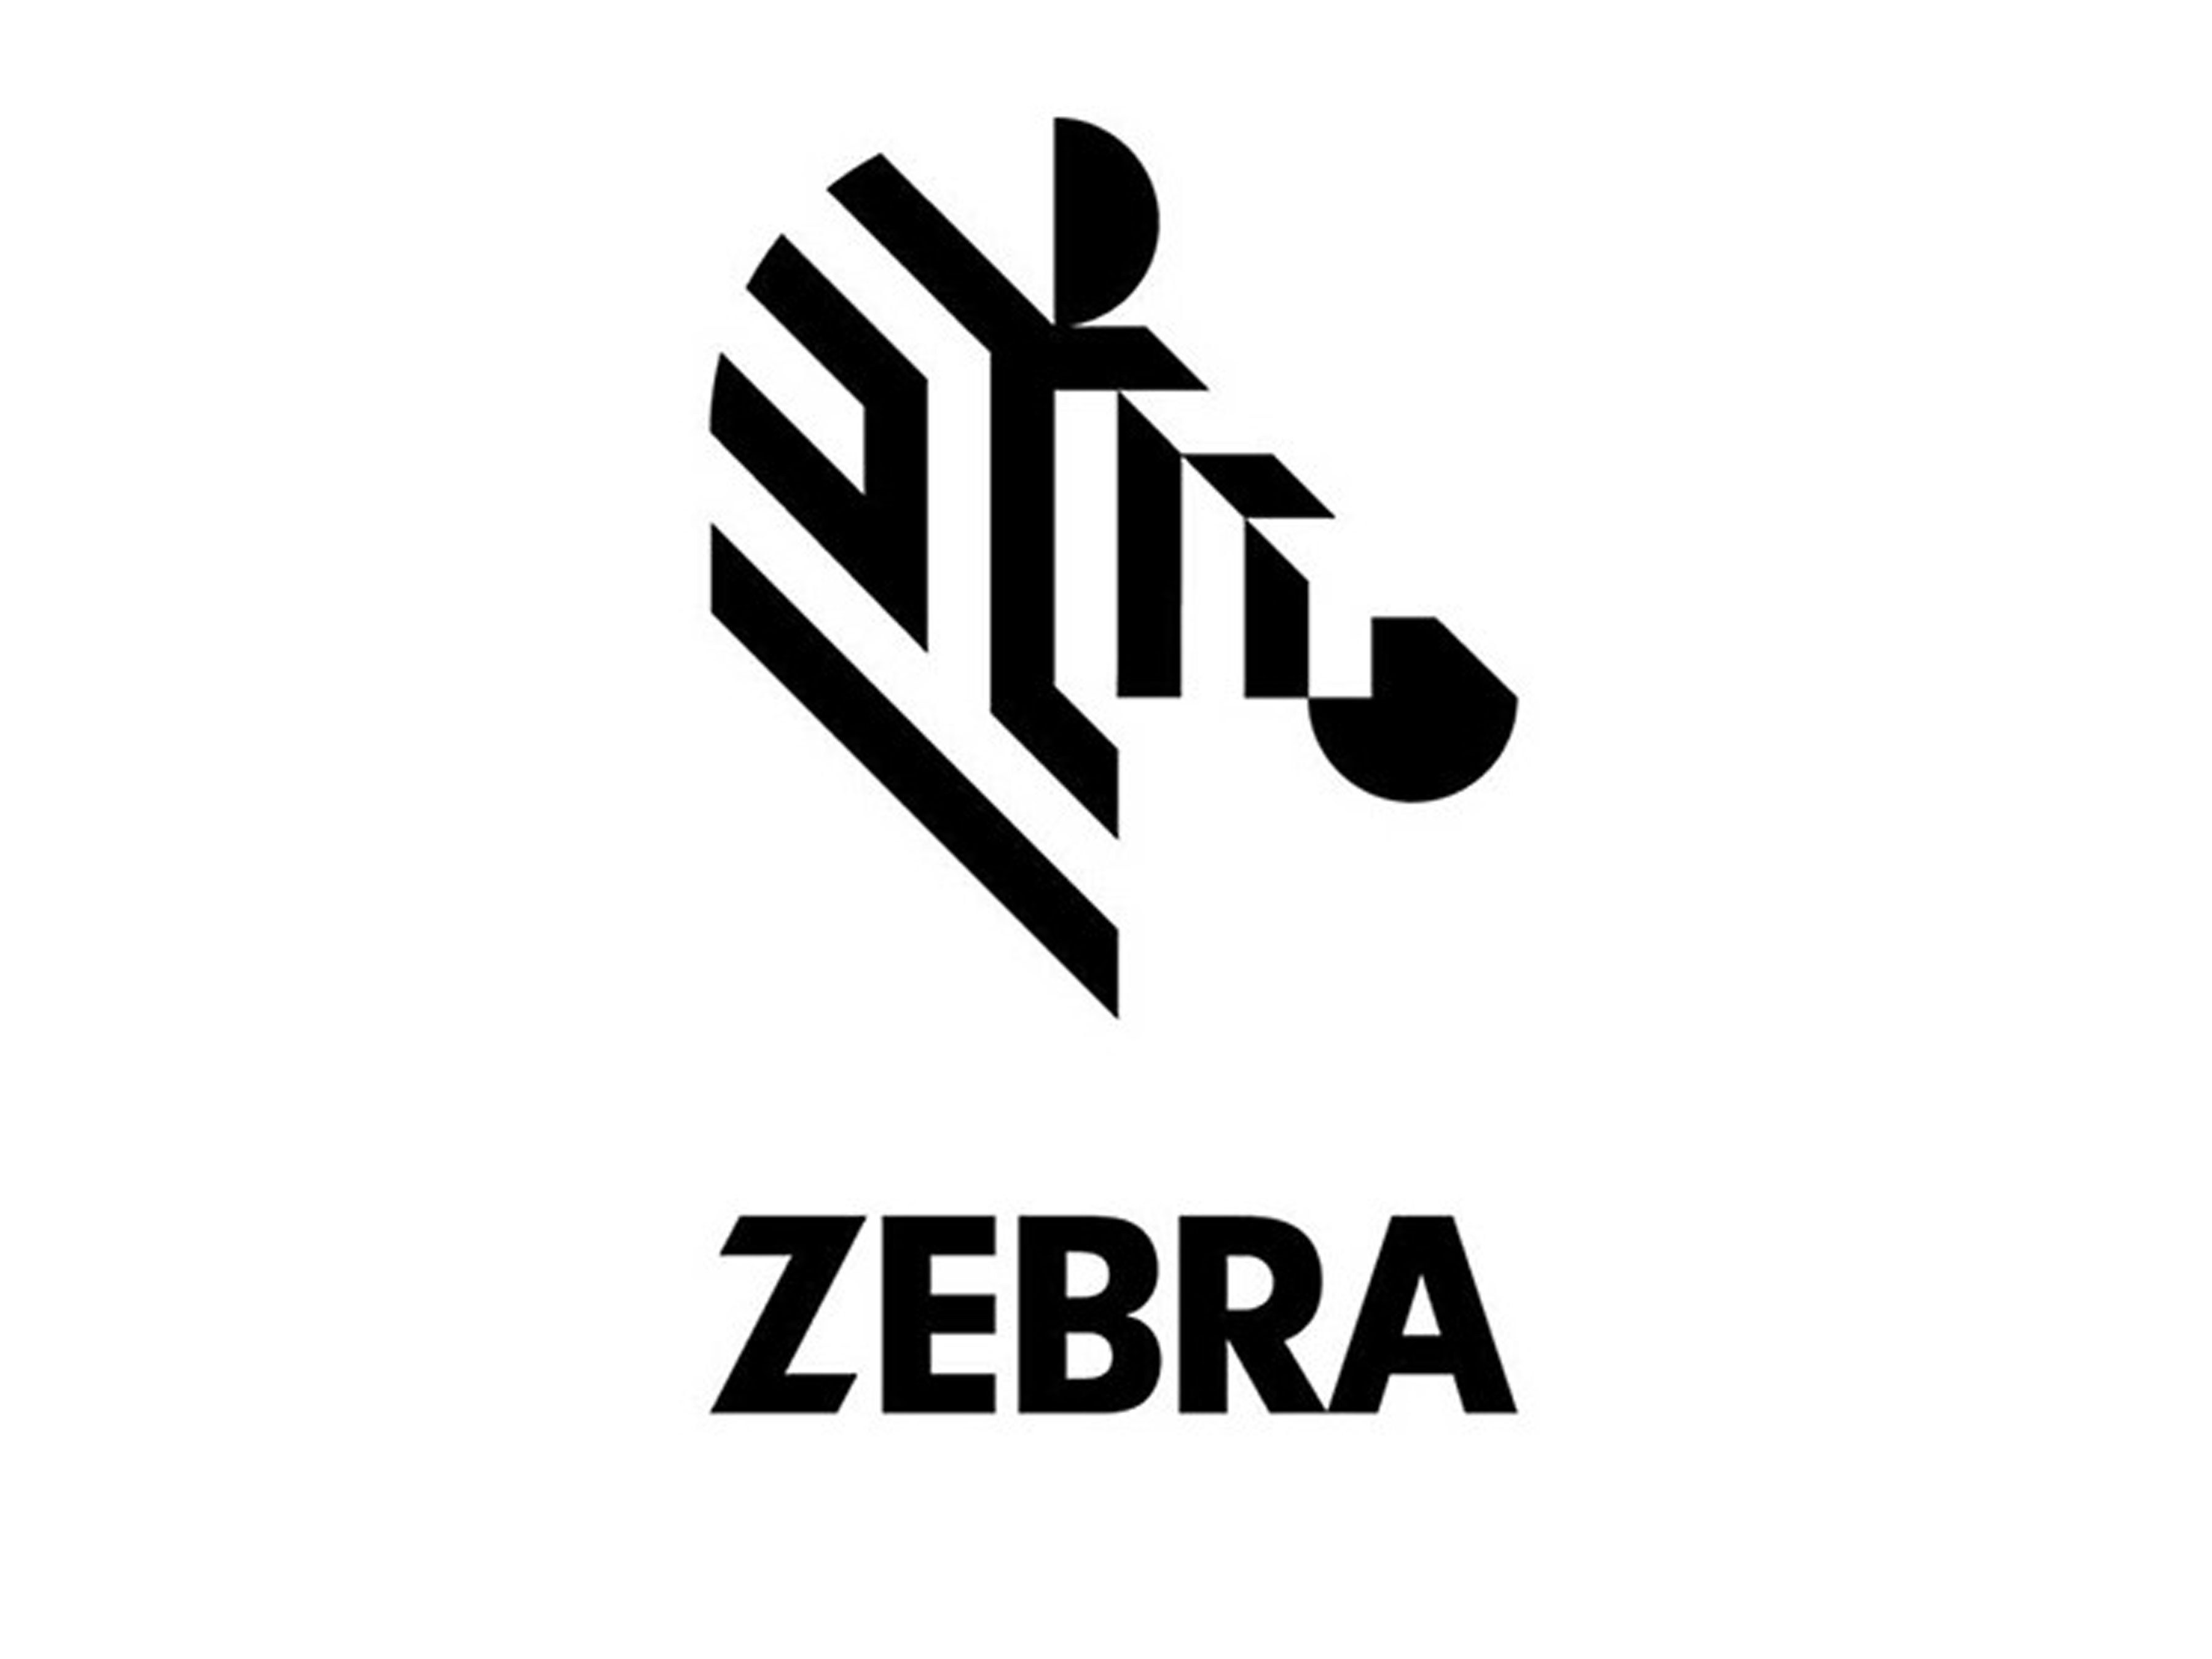 Zebra or Horse Logo - Branition